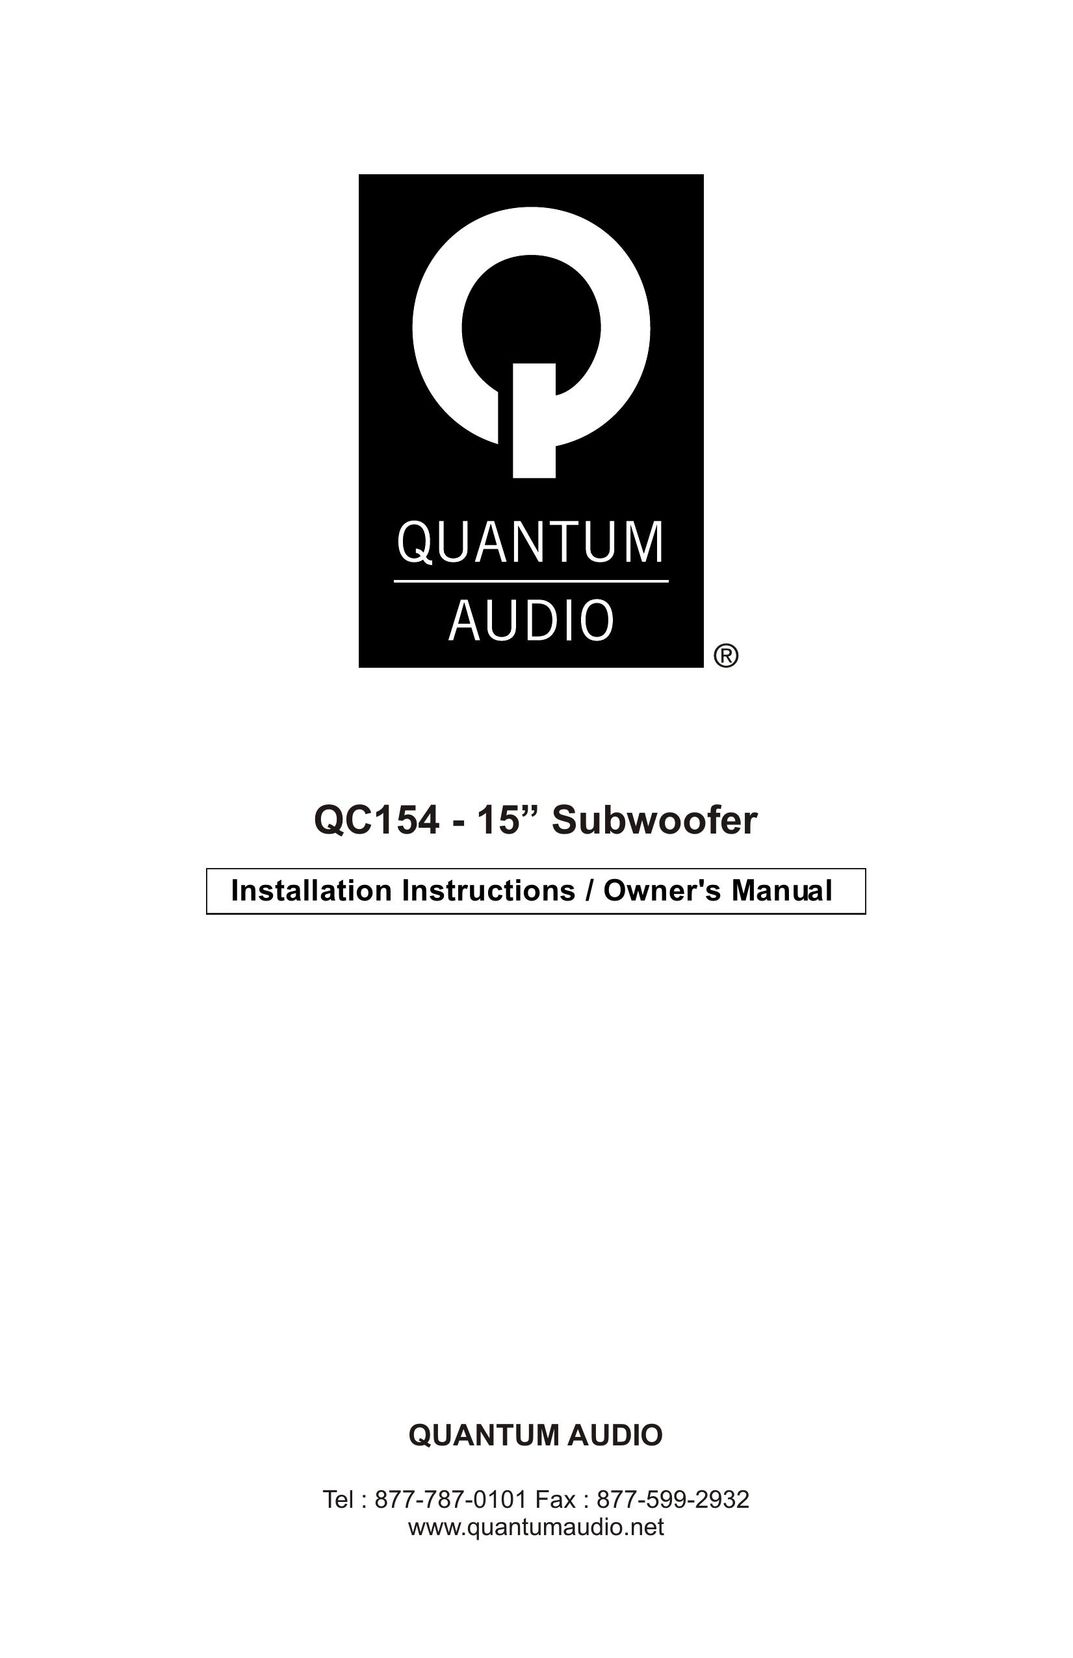 Quantum Audio QC154 Car Speaker User Manual